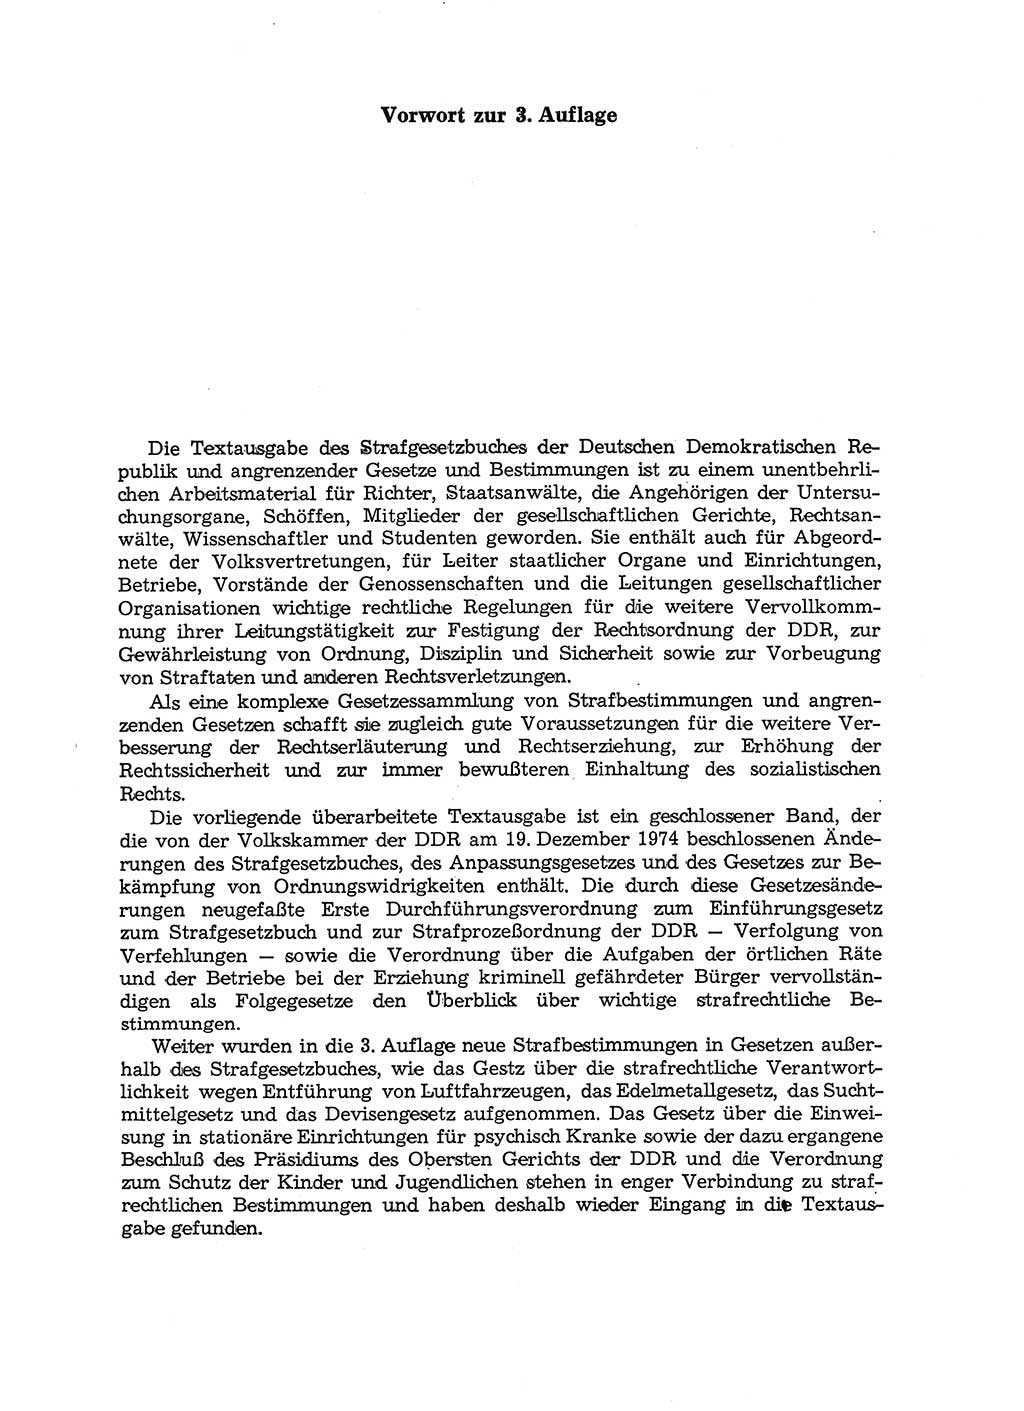 Strafgesetzbuch (StGB) der Deutschen Demokratischen Republik (DDR) und angrenzende Gesetze und Bestimmungen 1975, Seite 5 (StGB DDR Ges. Best. 1975, S. 5)